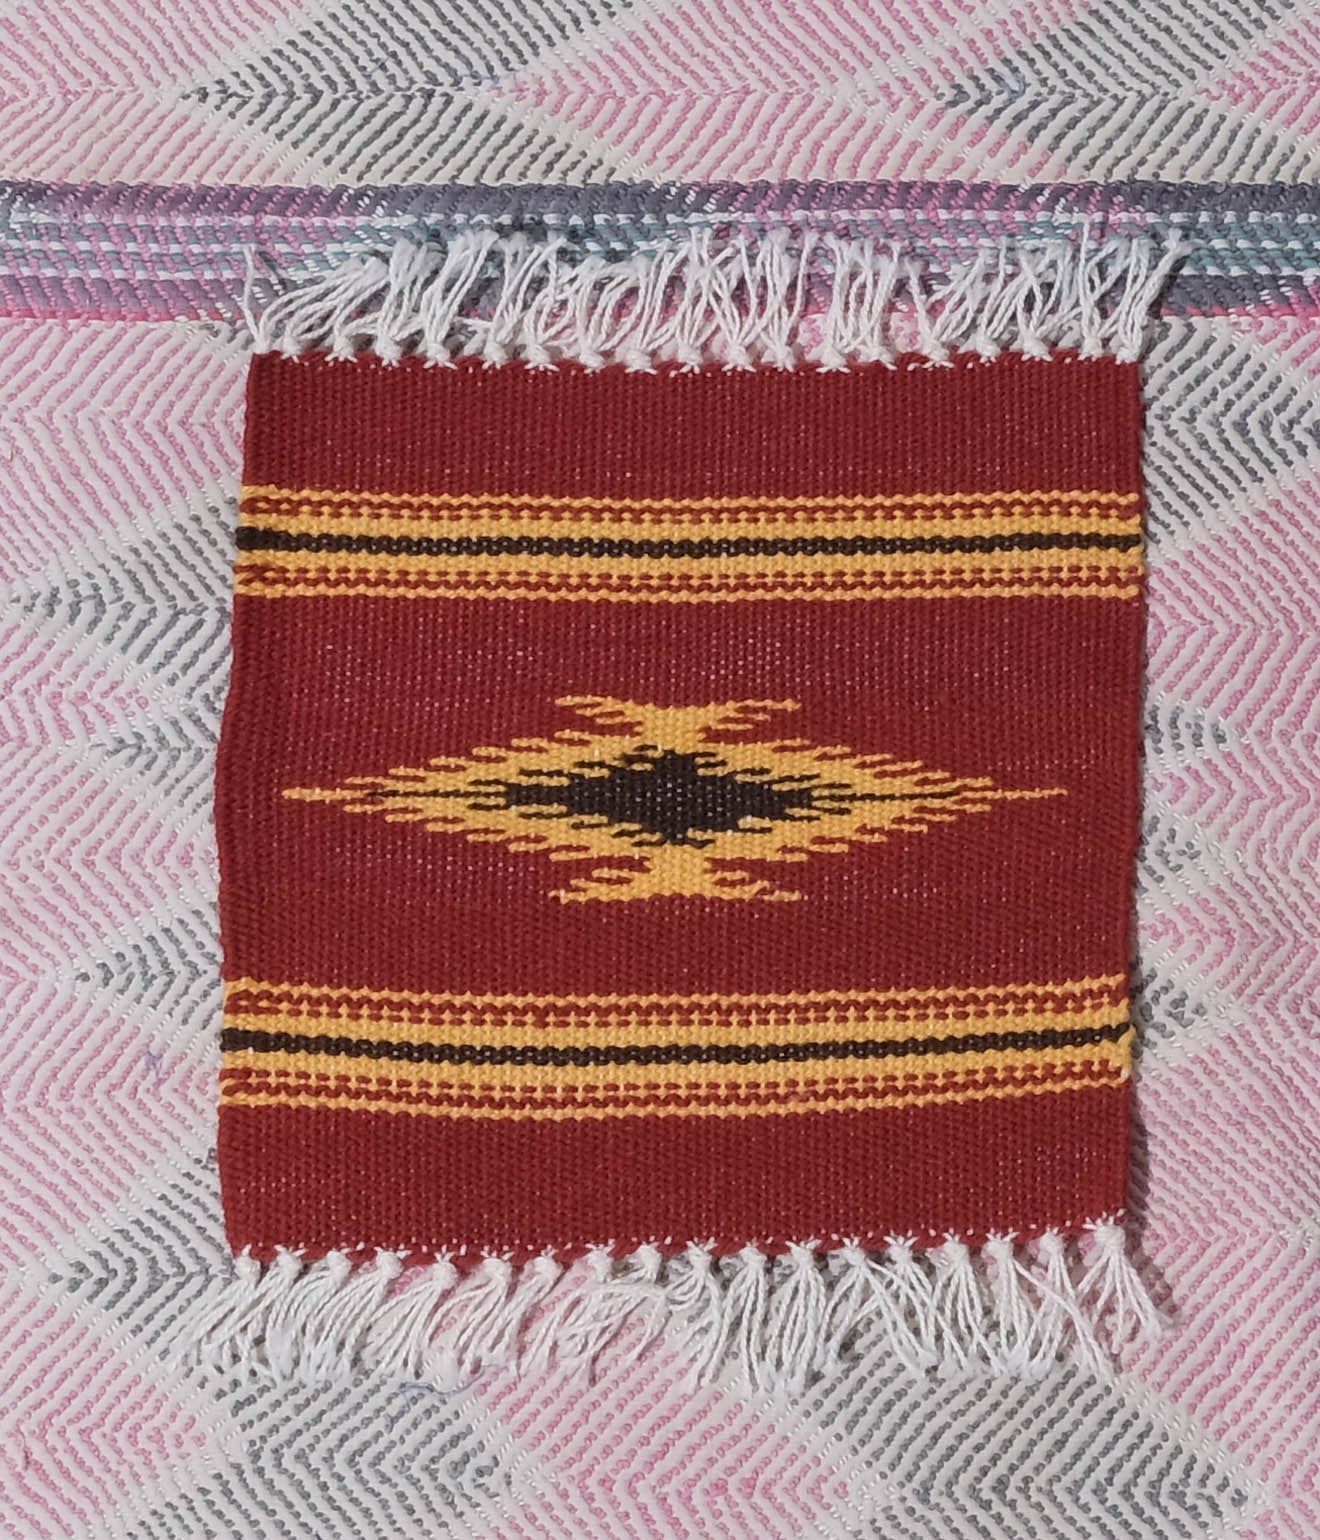 TRUJILLO'S "Chimayo Small Rag"